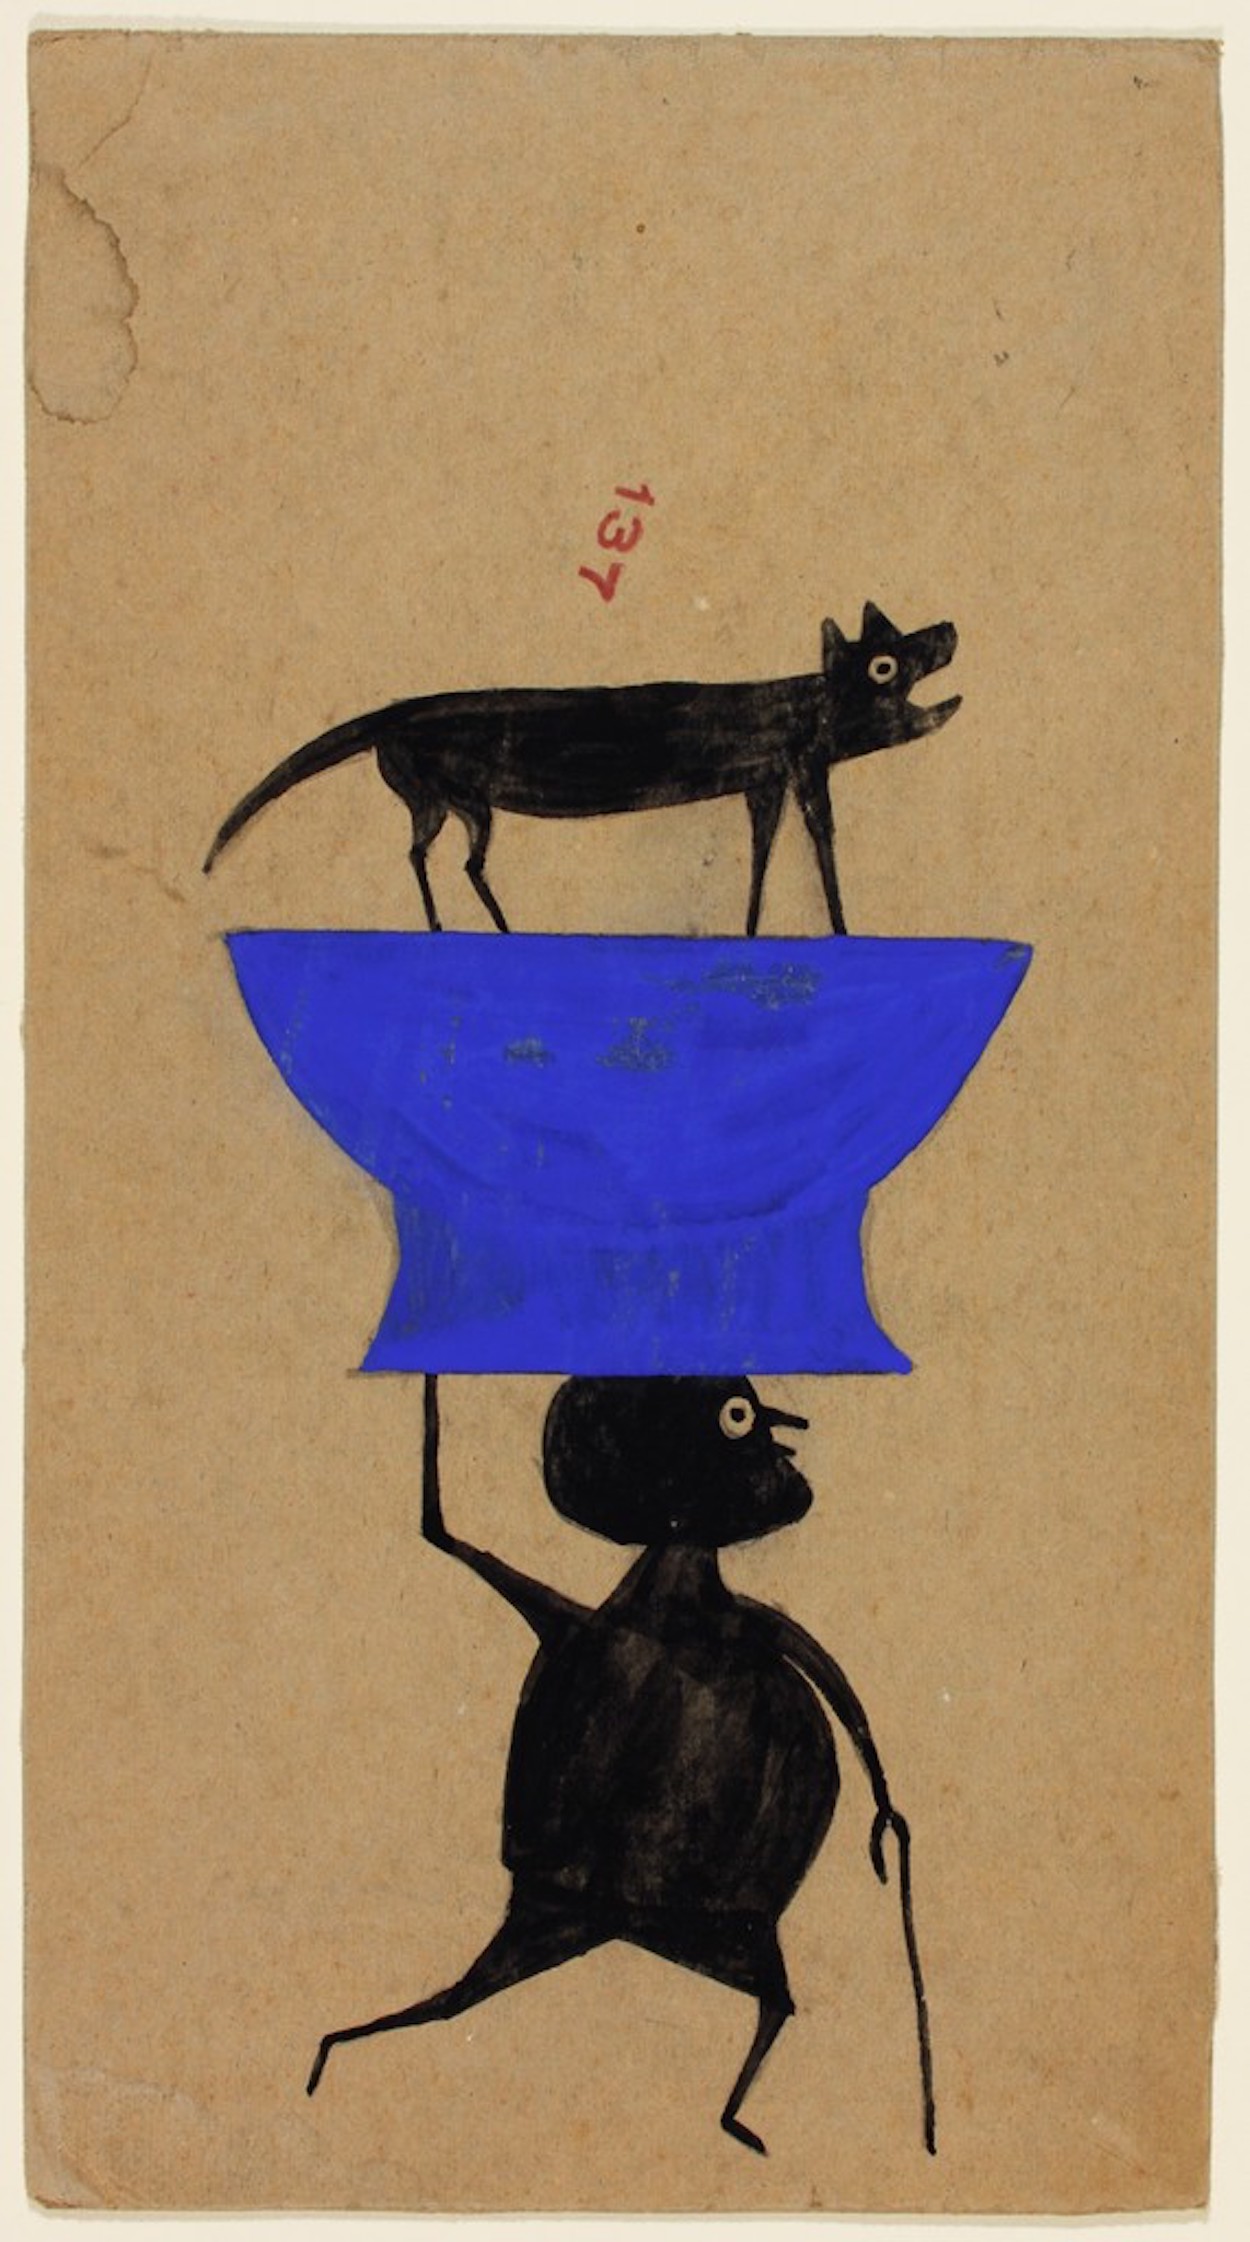 Fără titlu (Bărbat care poartă un câine pe un obiect) by Bill Traylor - cca. 1939-1942 - 33.6 x 18.4 cm 